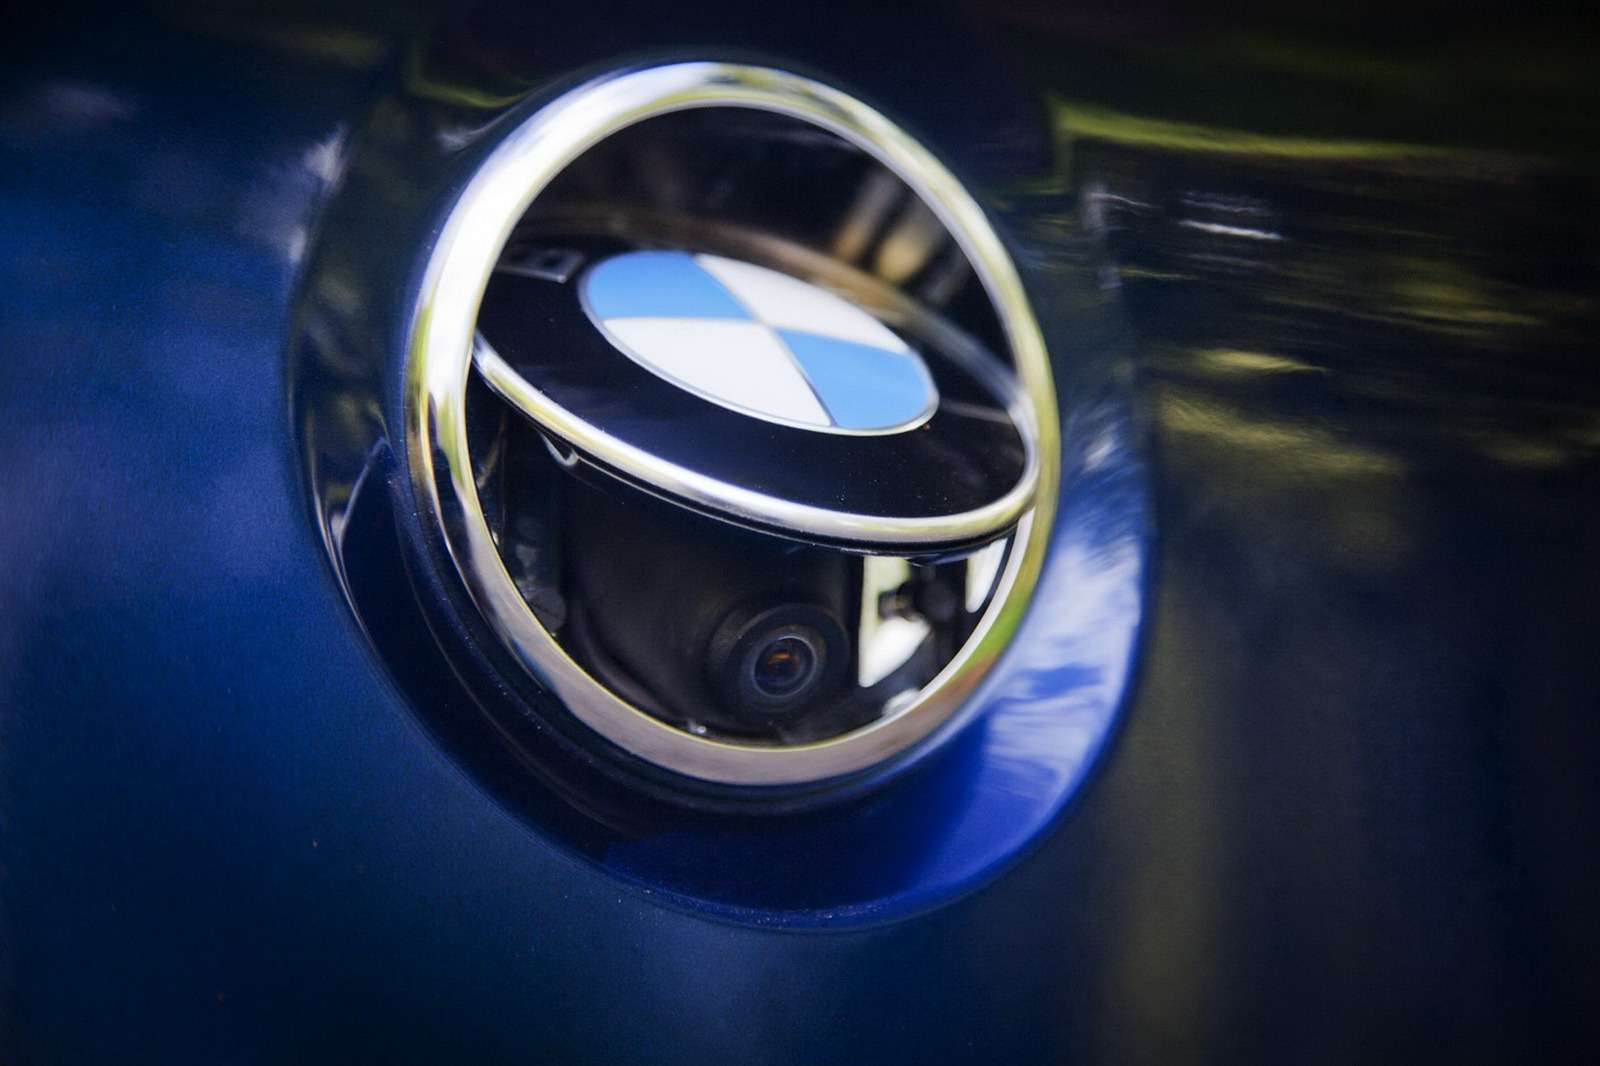 BMW serii 6 Gran Coupe zdjęcia